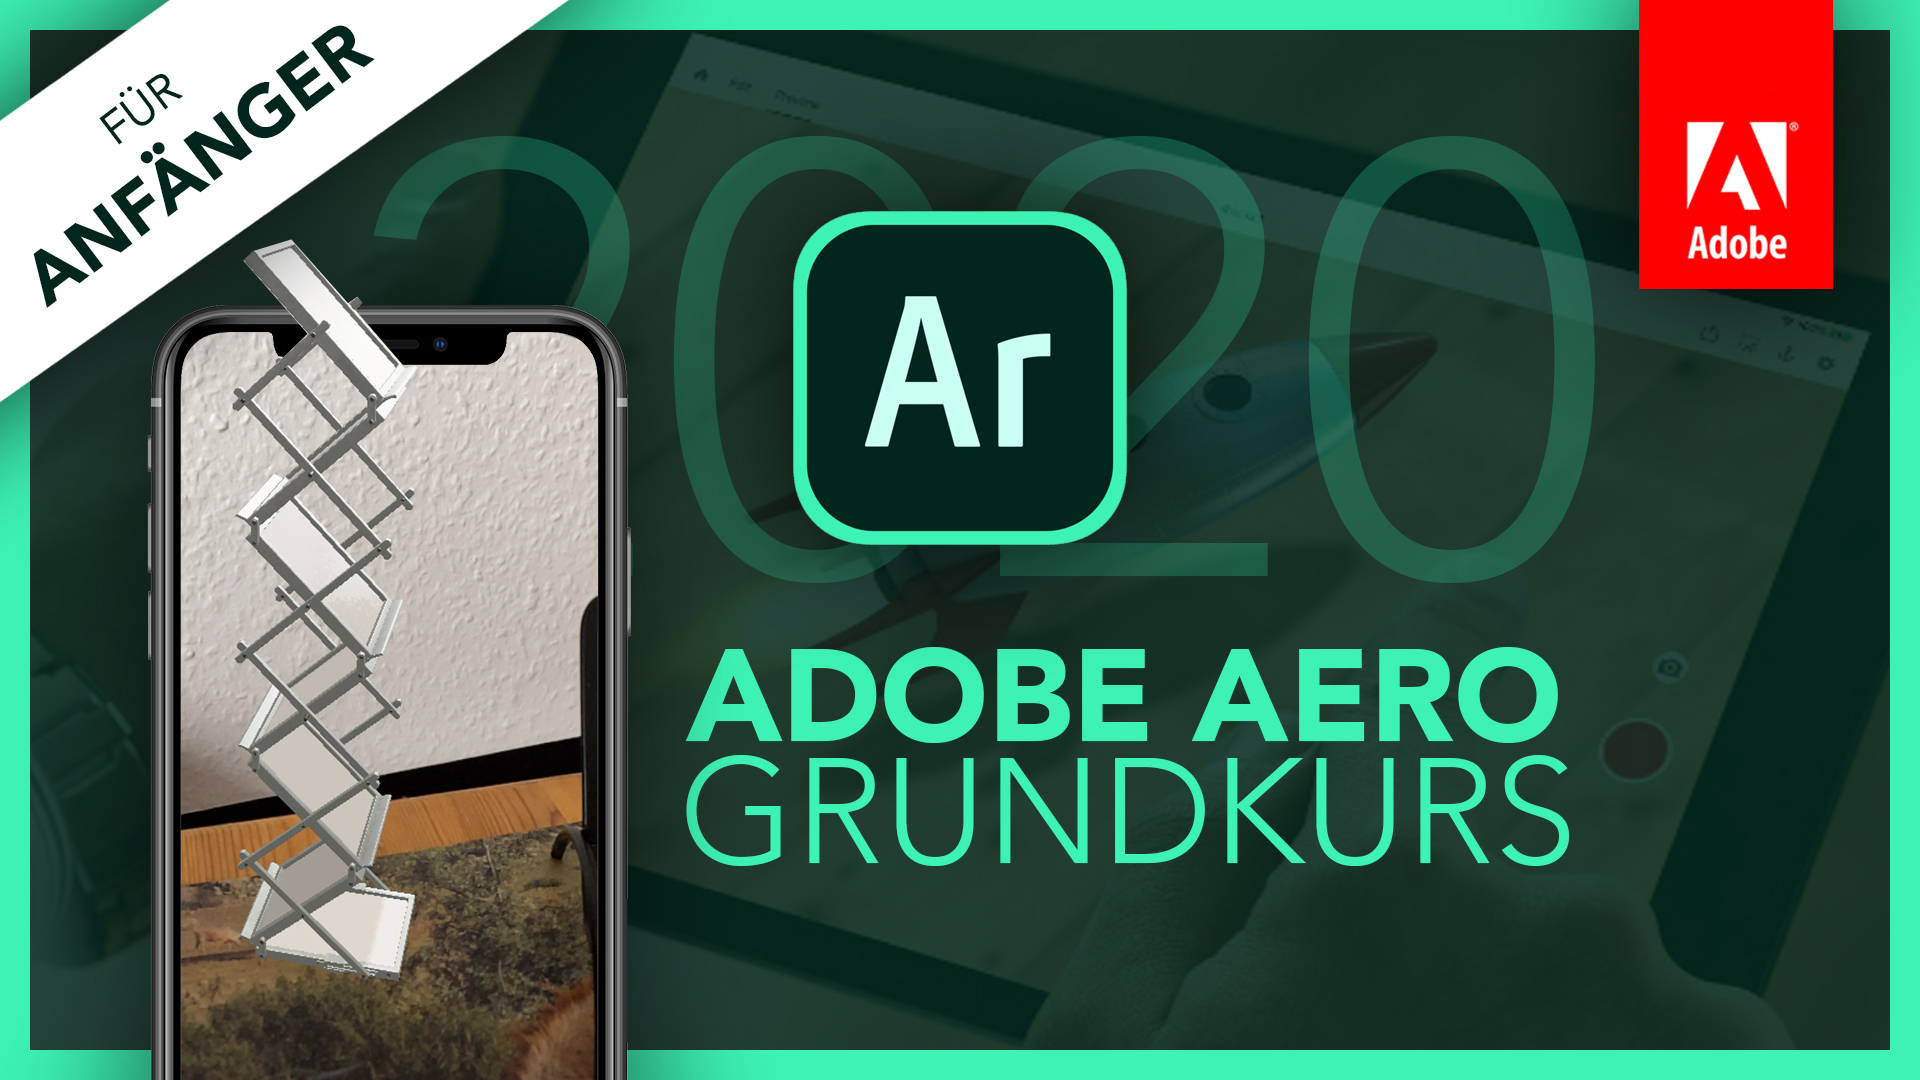 Adobe Aero (Grundkurs für Anfänger) Deutsch (Tutorial) App